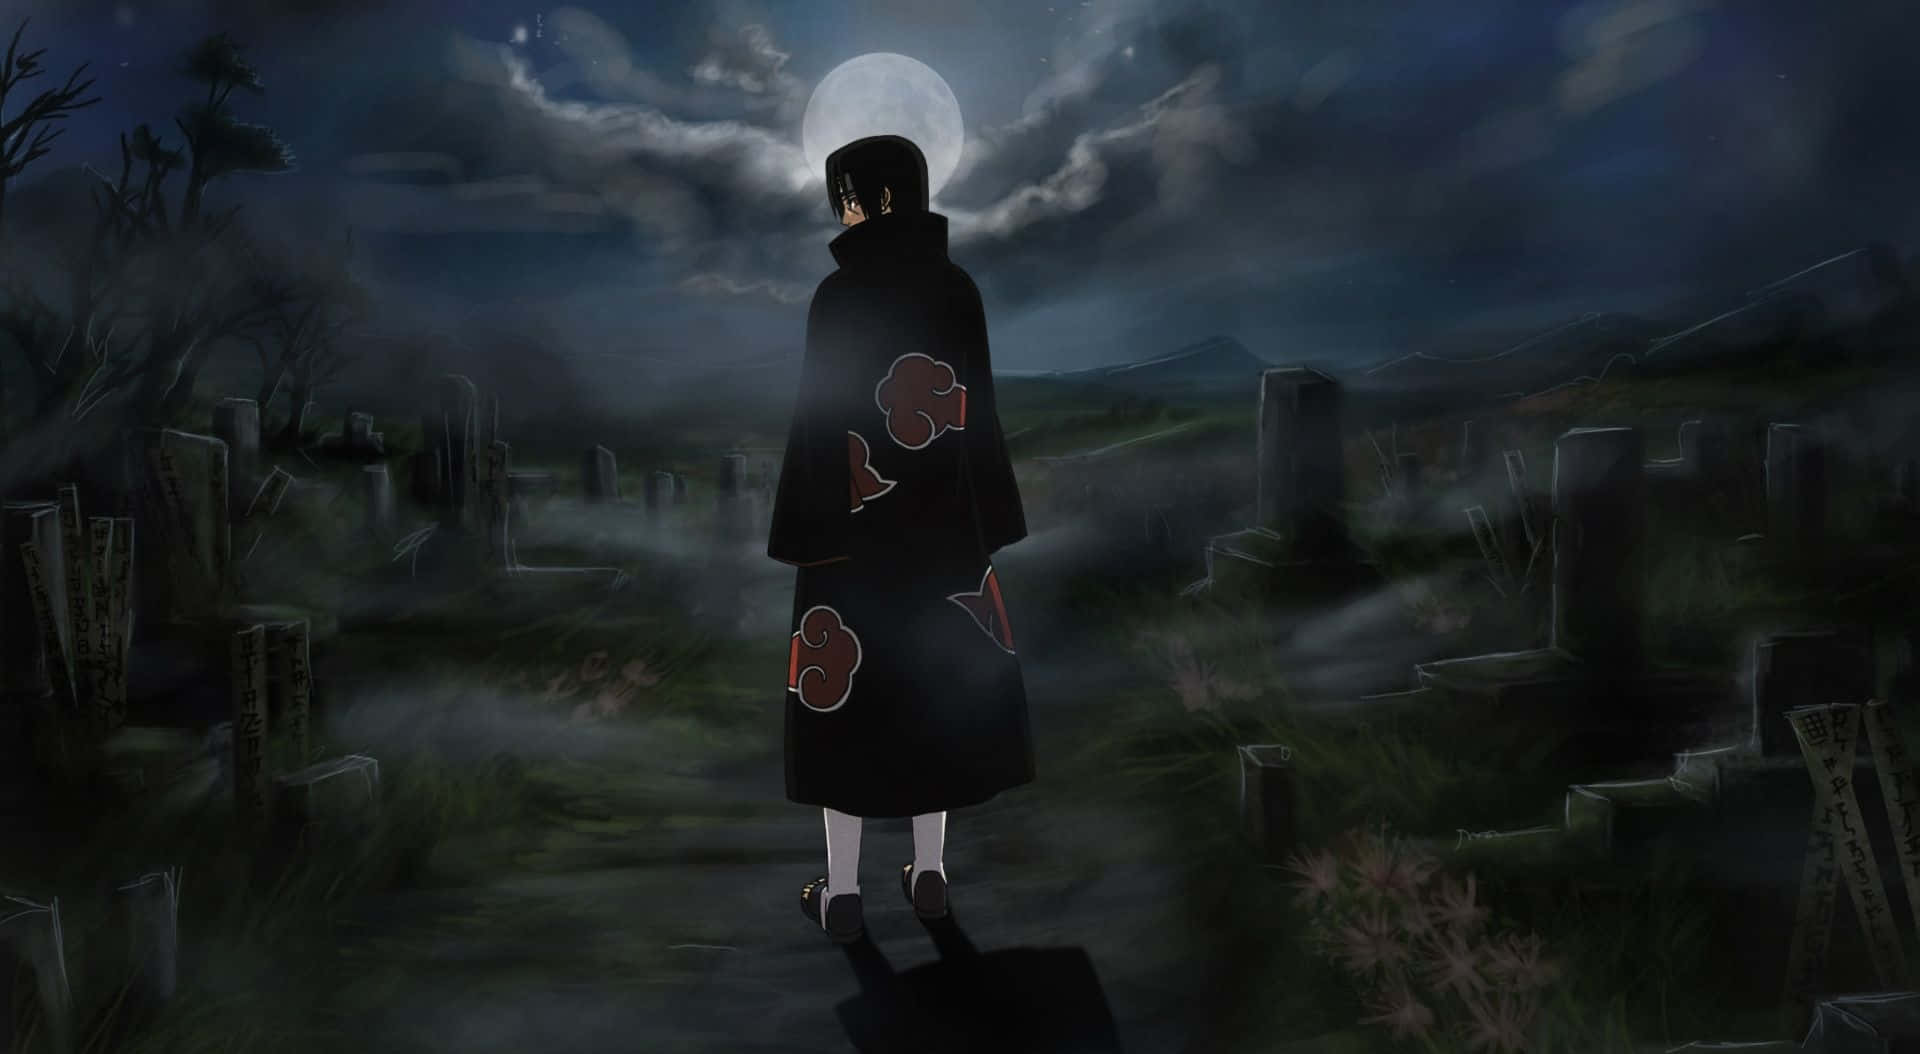 Itachiestético Vistiendo La Túnica De Nubes Akatsuki Caminando En Un Cementerio Bajo La Noche De Luna. Fondo de pantalla